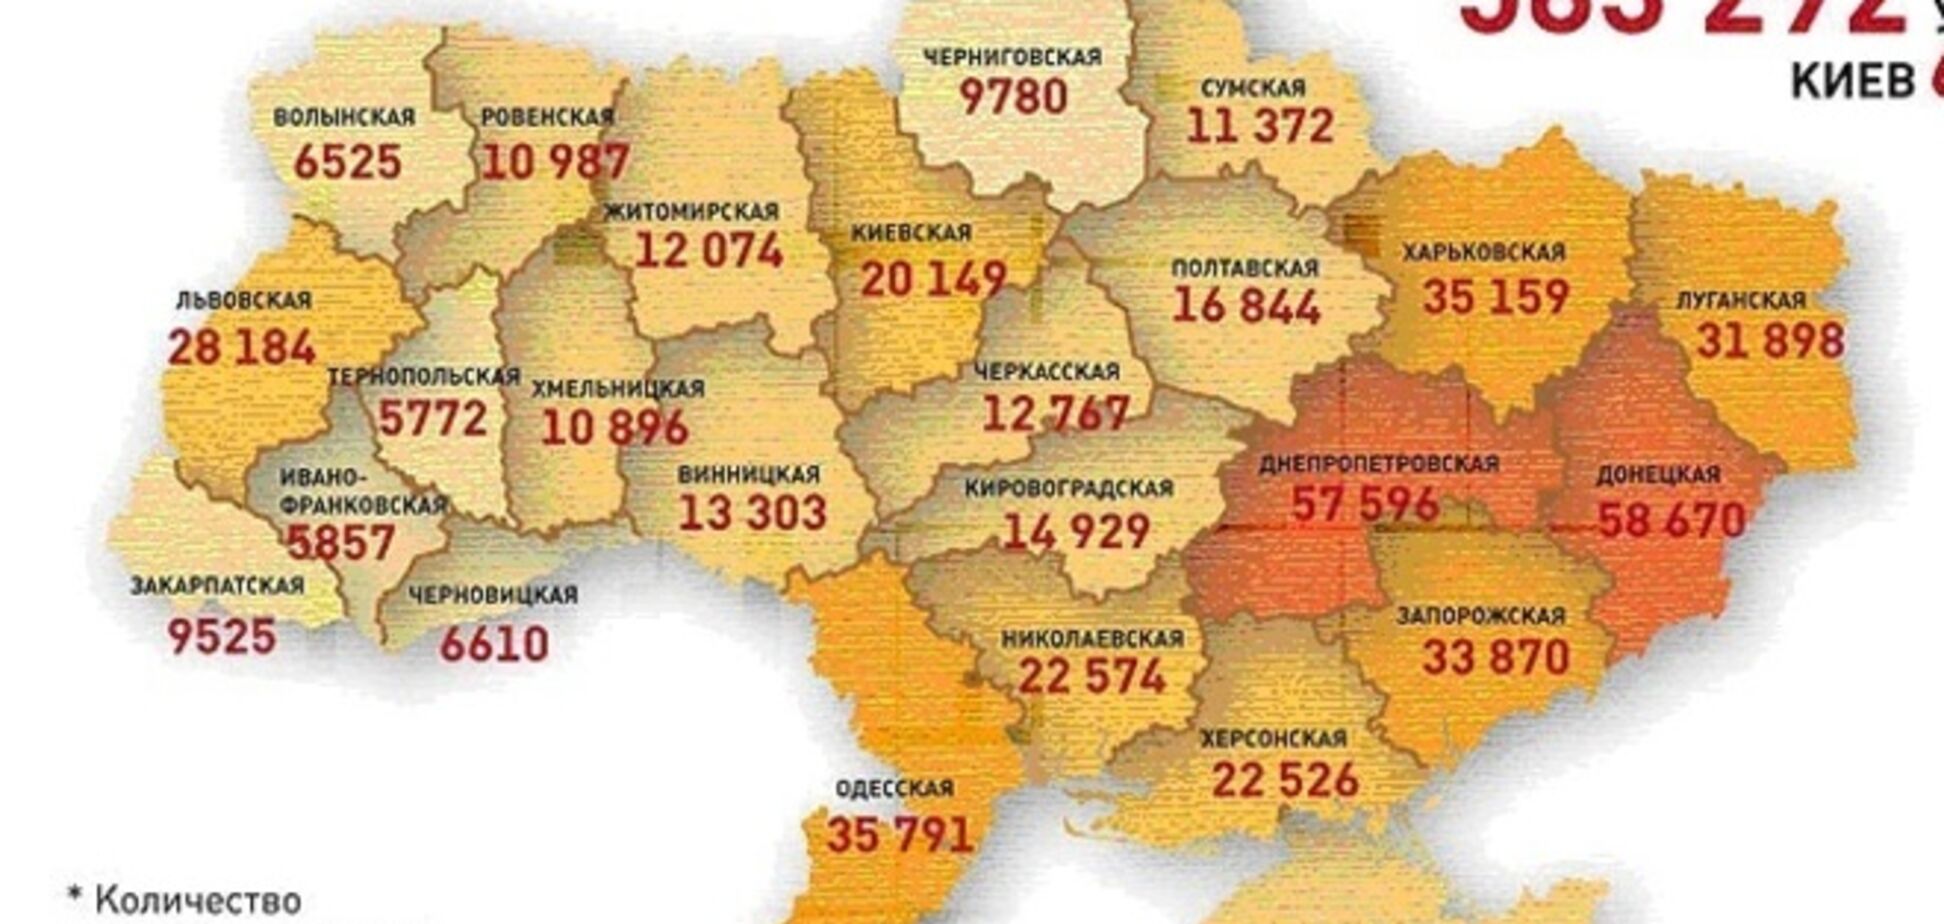 Появилась карта самых криминогенных регионов Украины: восток лидирует